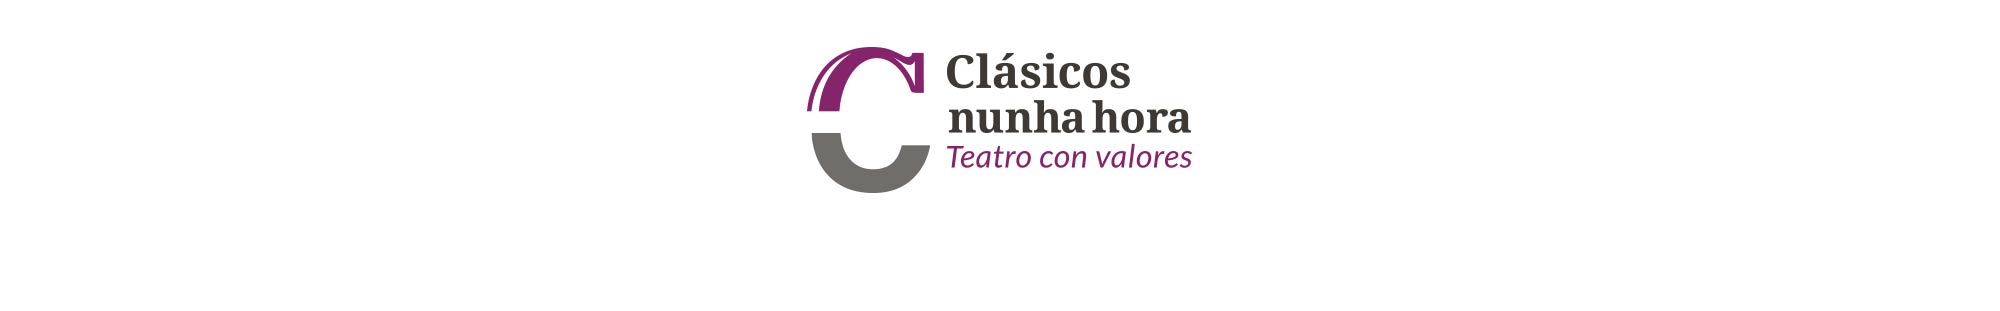 Identidad corporativa para compañía de teatro gallego formado por un símbolo y un logotipo con tipografía clásica pero actual